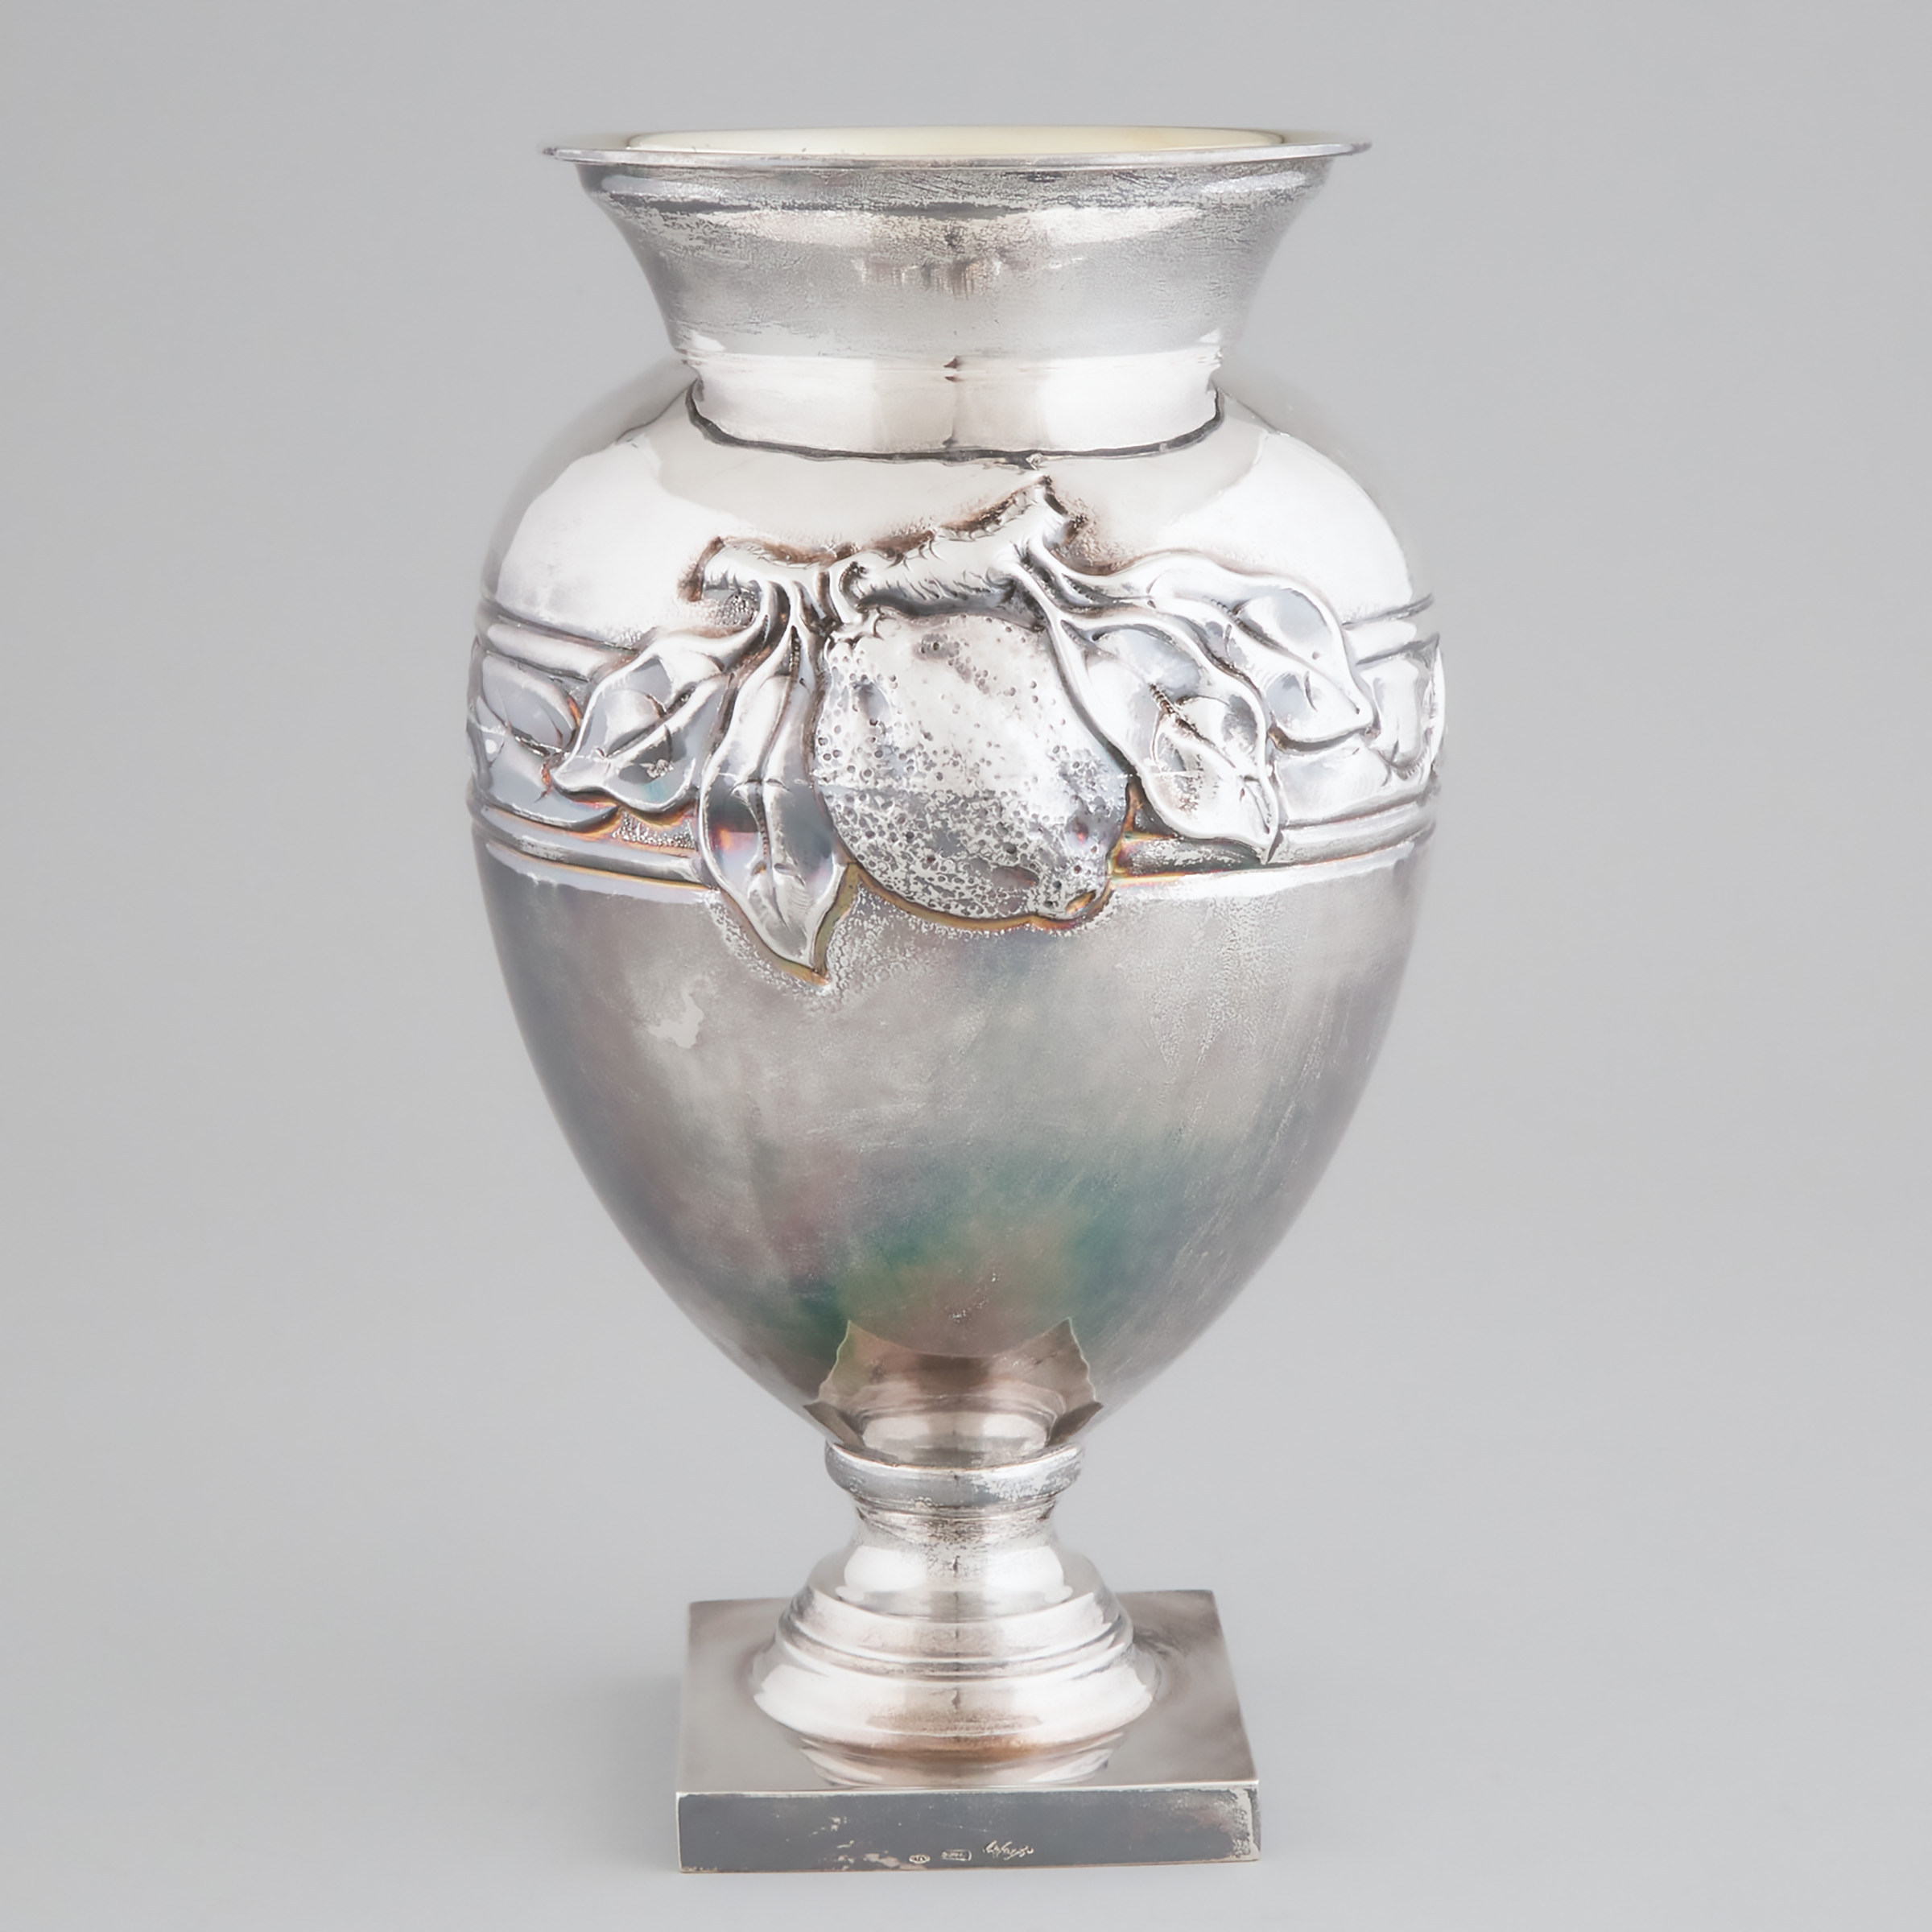 Italian Silver Large Vase, Enzo Cerfagli, for Nardi Gioielleria, Venice, 20th century